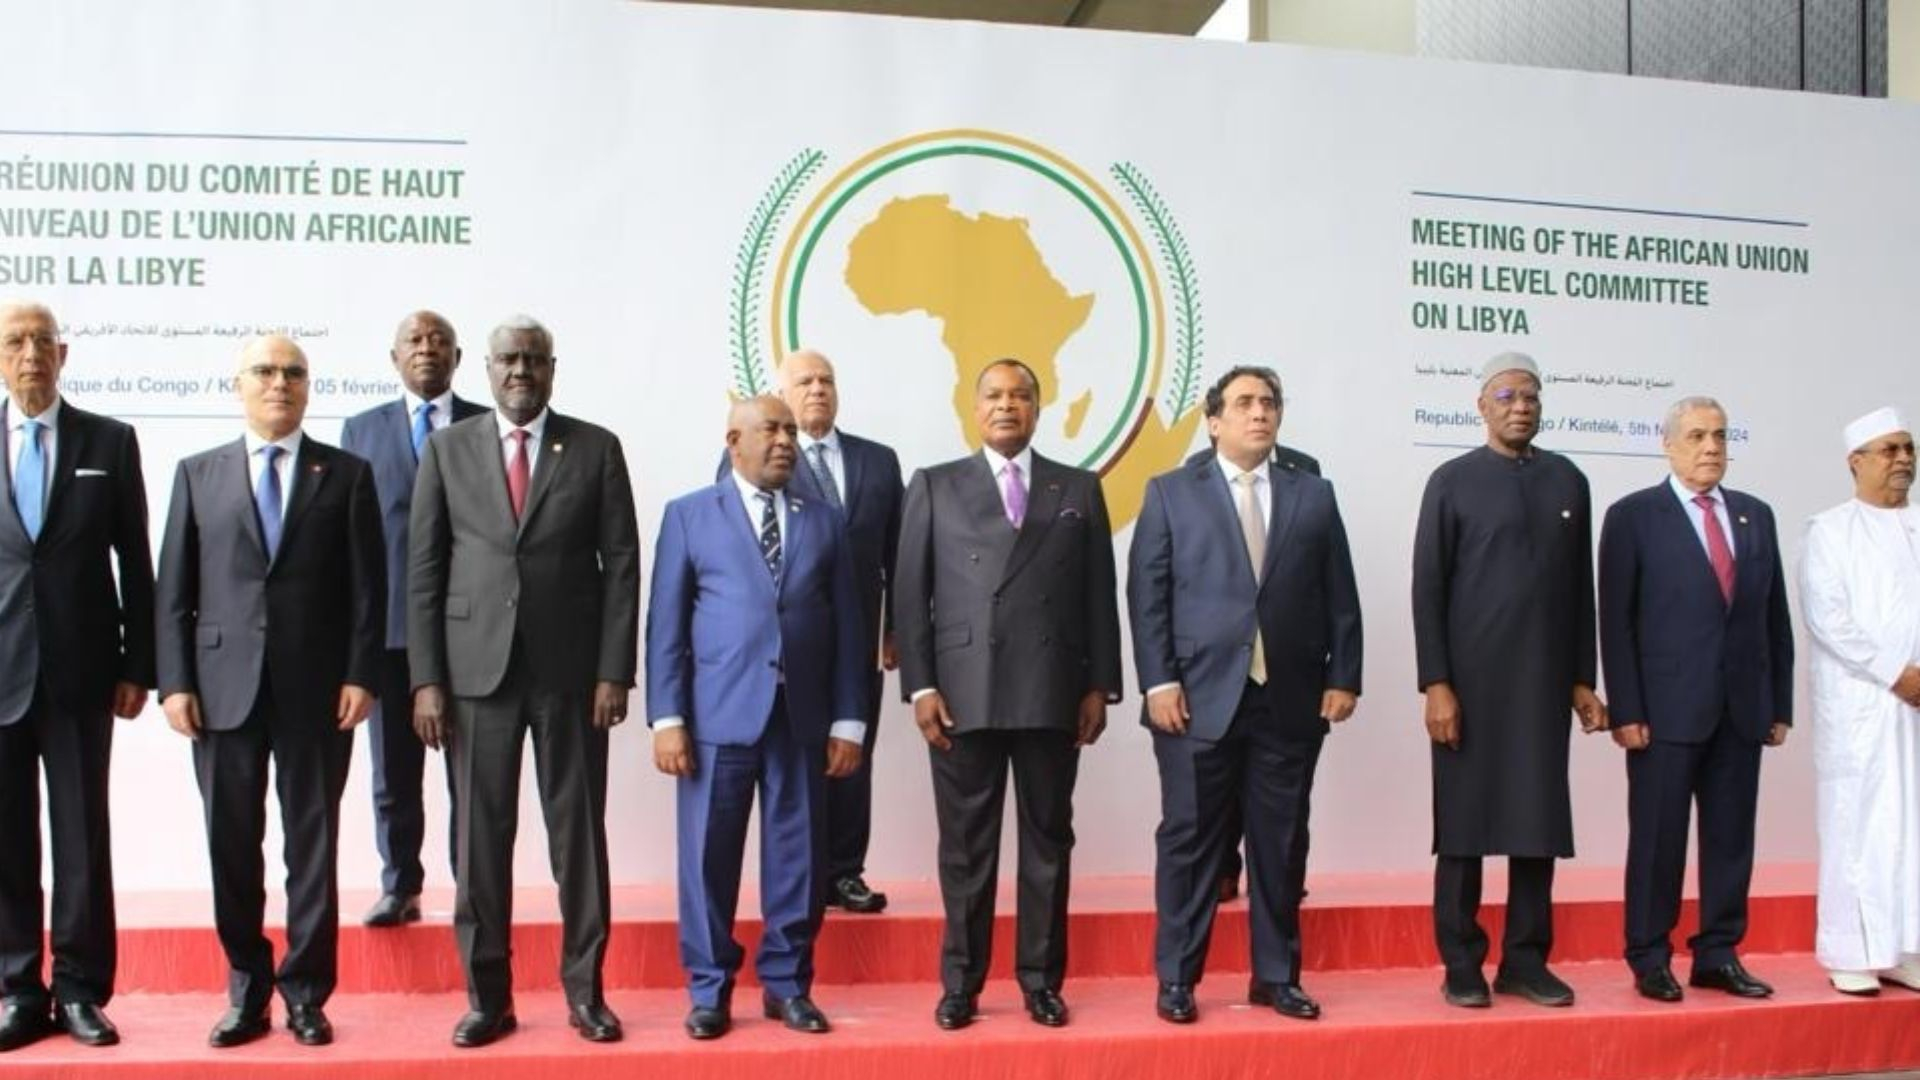 Réunion du Comité de haut niveau de l'Union Africaine sur la Libye